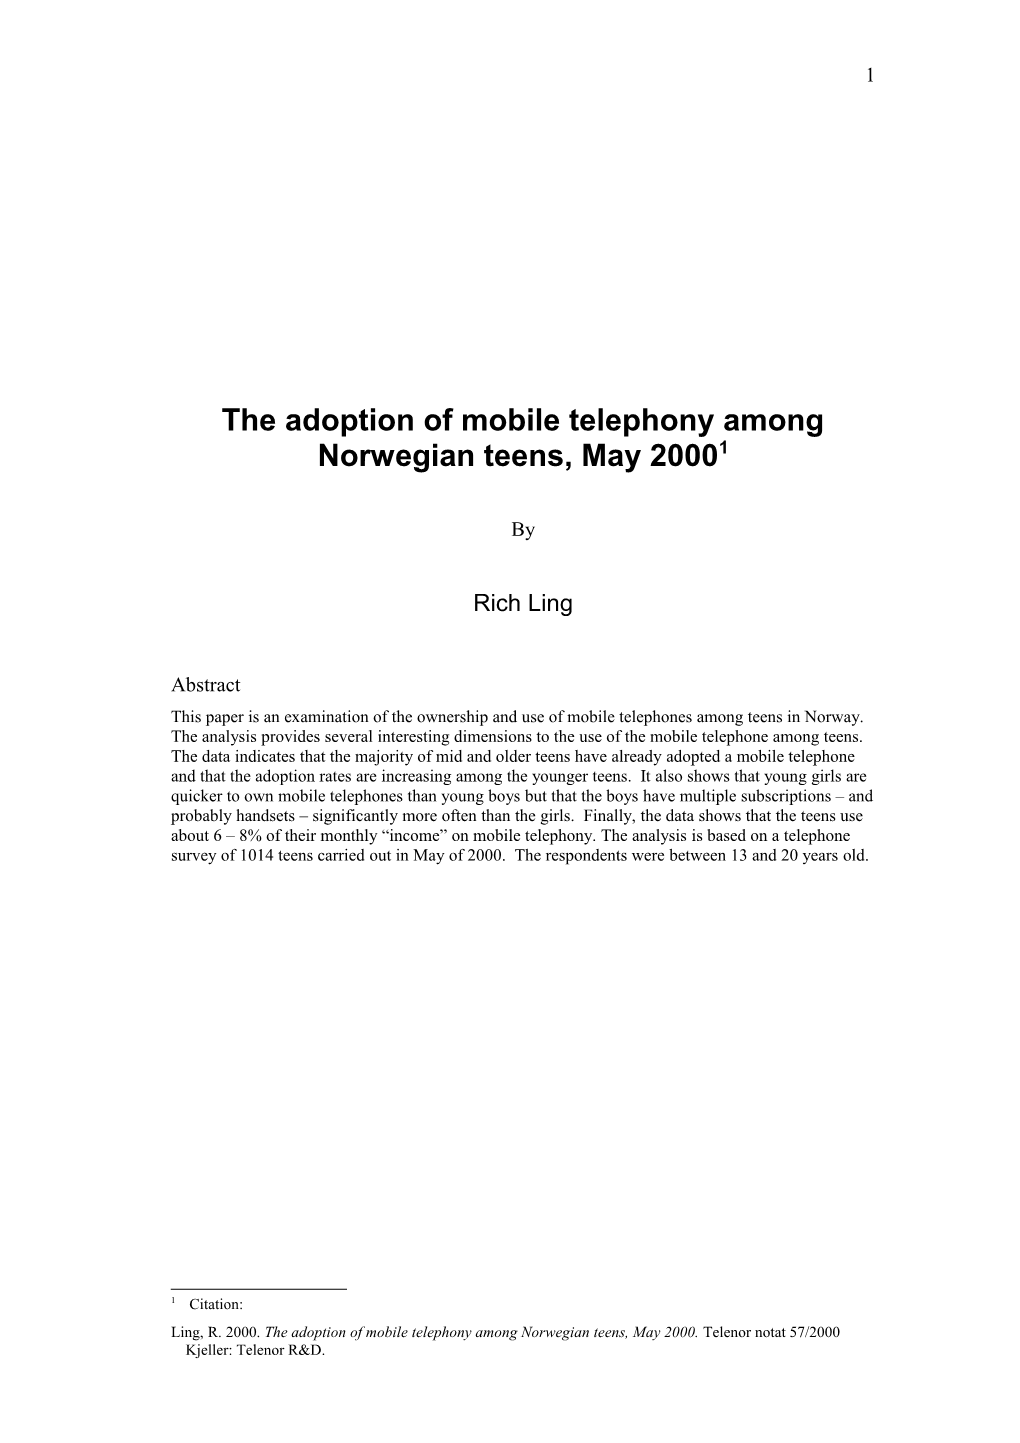 The Adoption of Mobile Telephony Among Norwegian Teens, May 2000 1